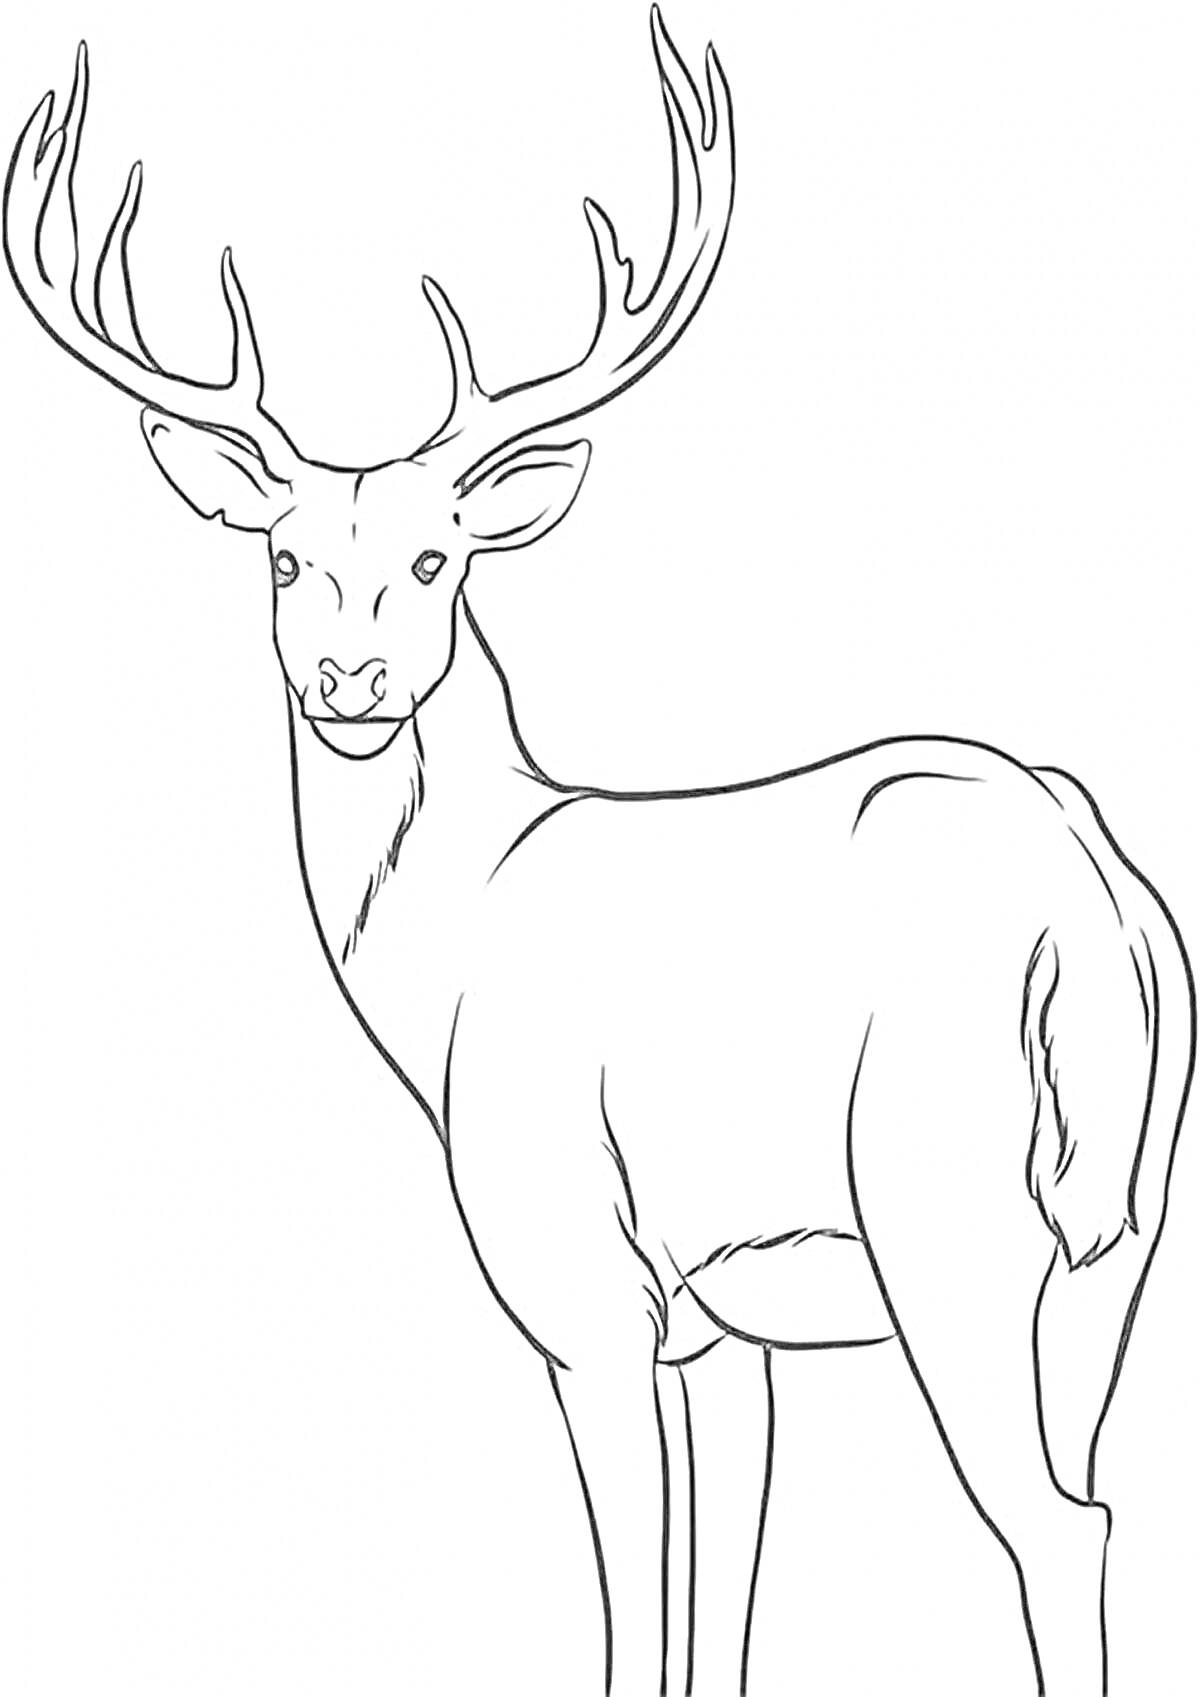 Раскраска Благородный олень с рогами на белом фоне